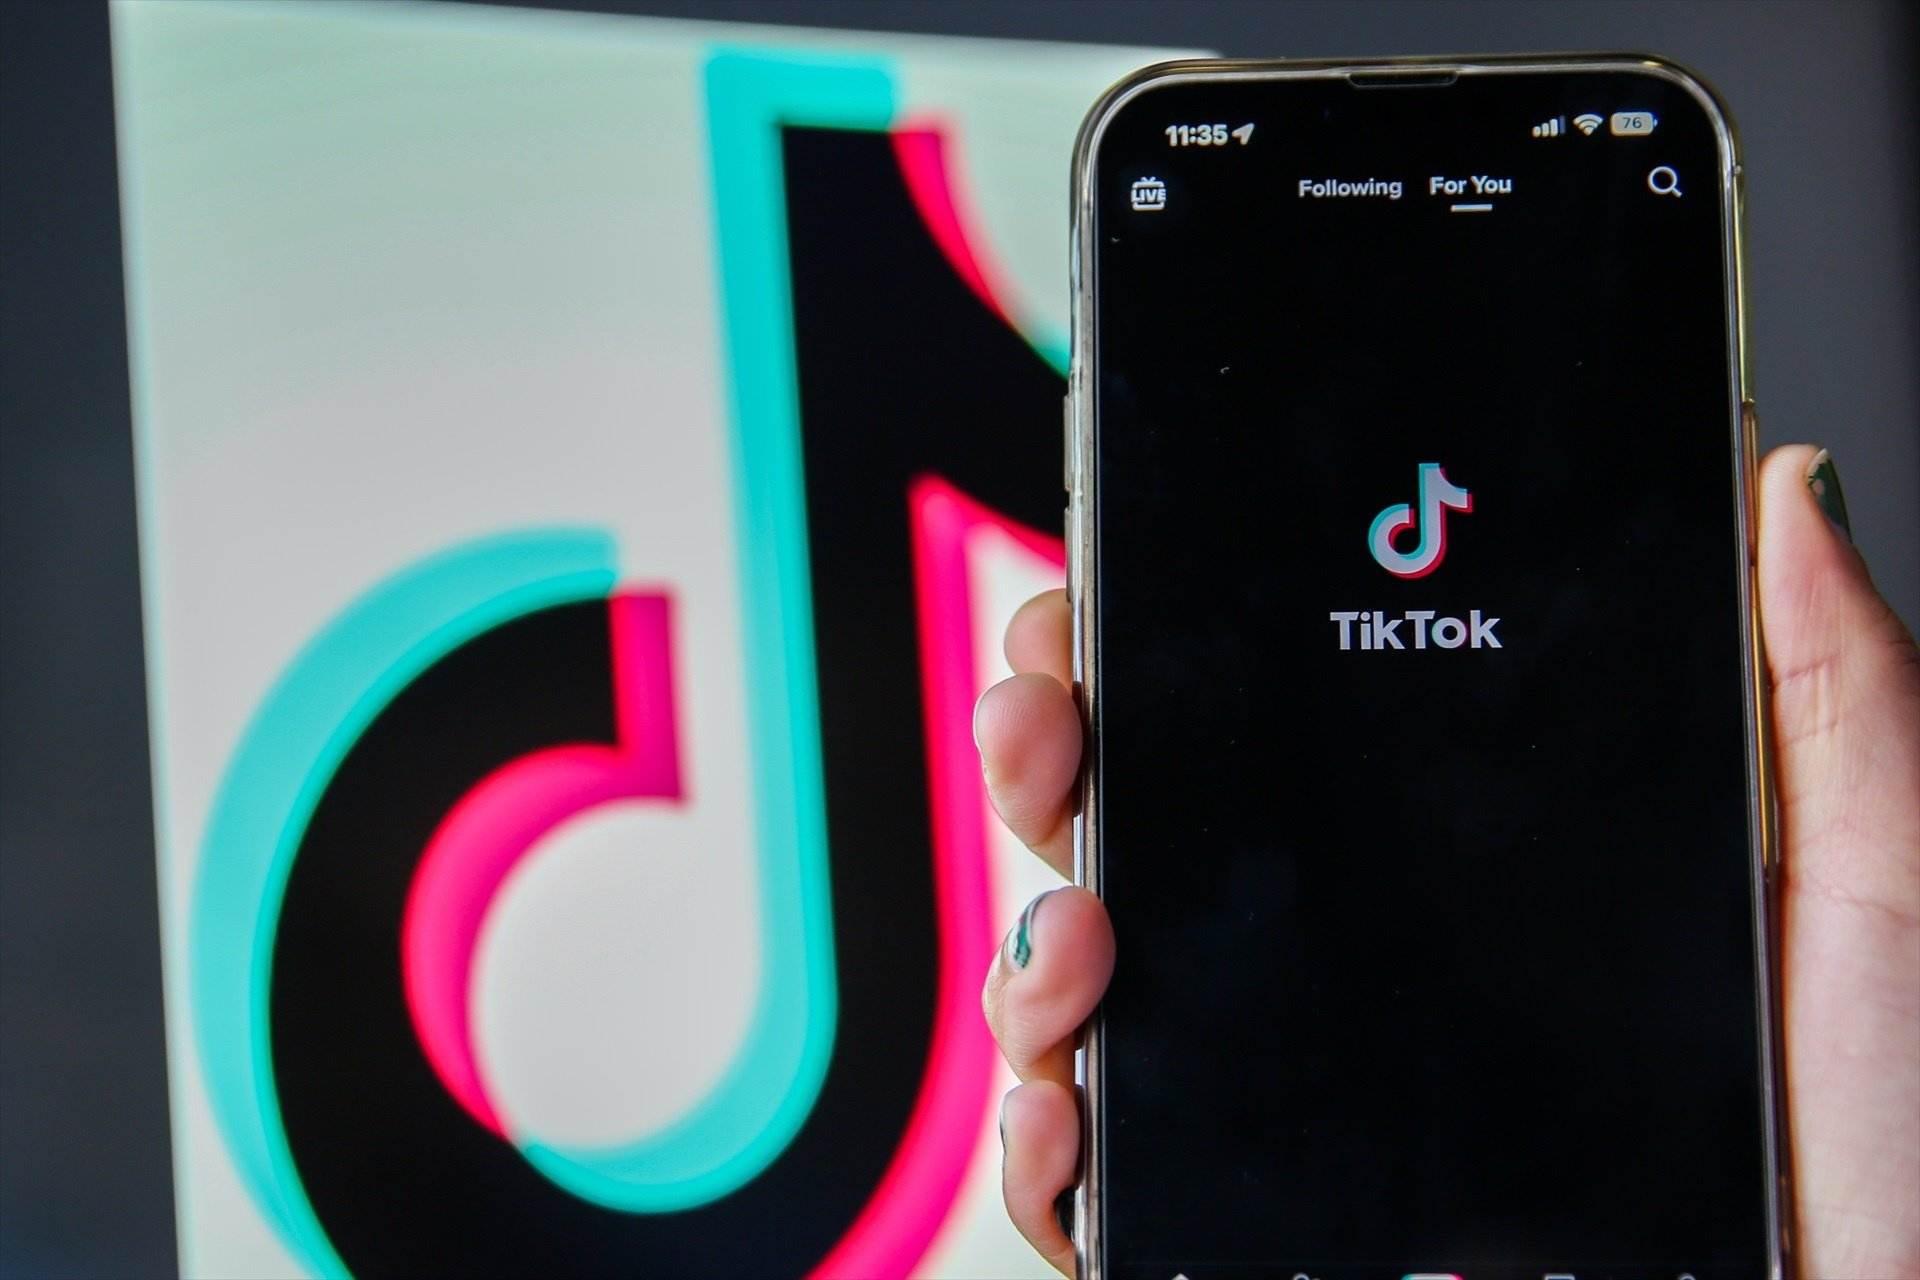 Bruselas amenaza con suspender una versión más rápida de TikTok por "tóxica y adictiva"